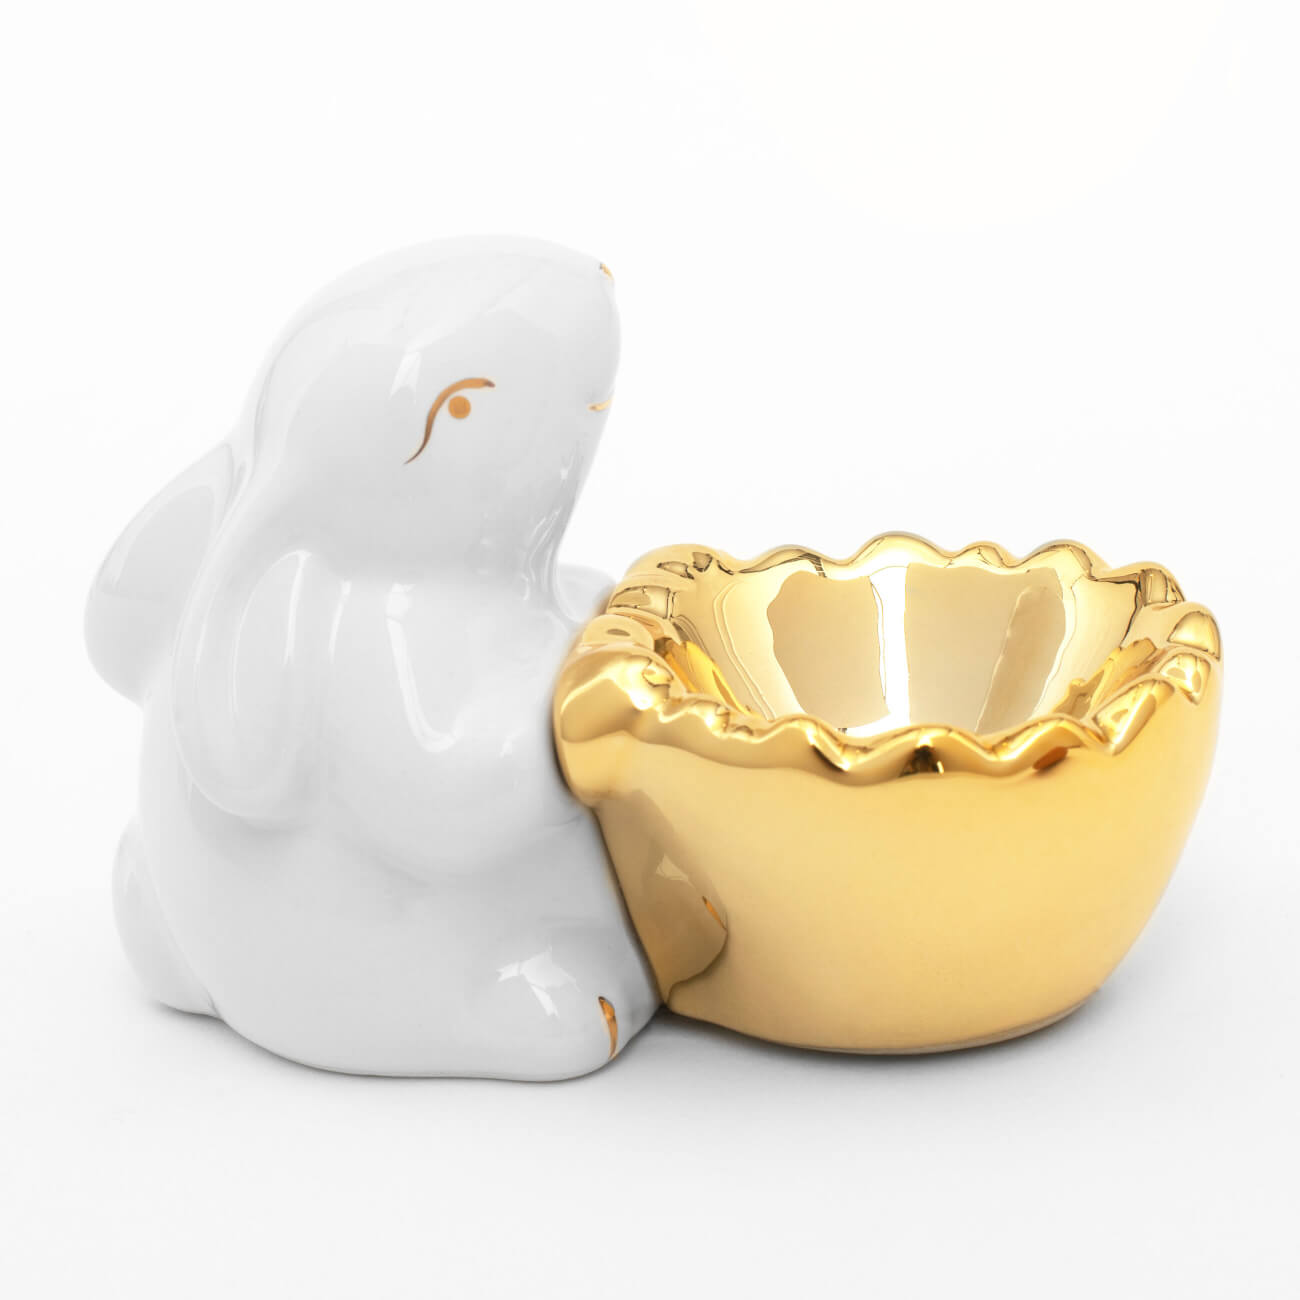 Подставка для яйца, 11 см, керамика, бело-золотистая, Кролик со скорлупой, Easter gold подставка для яиц